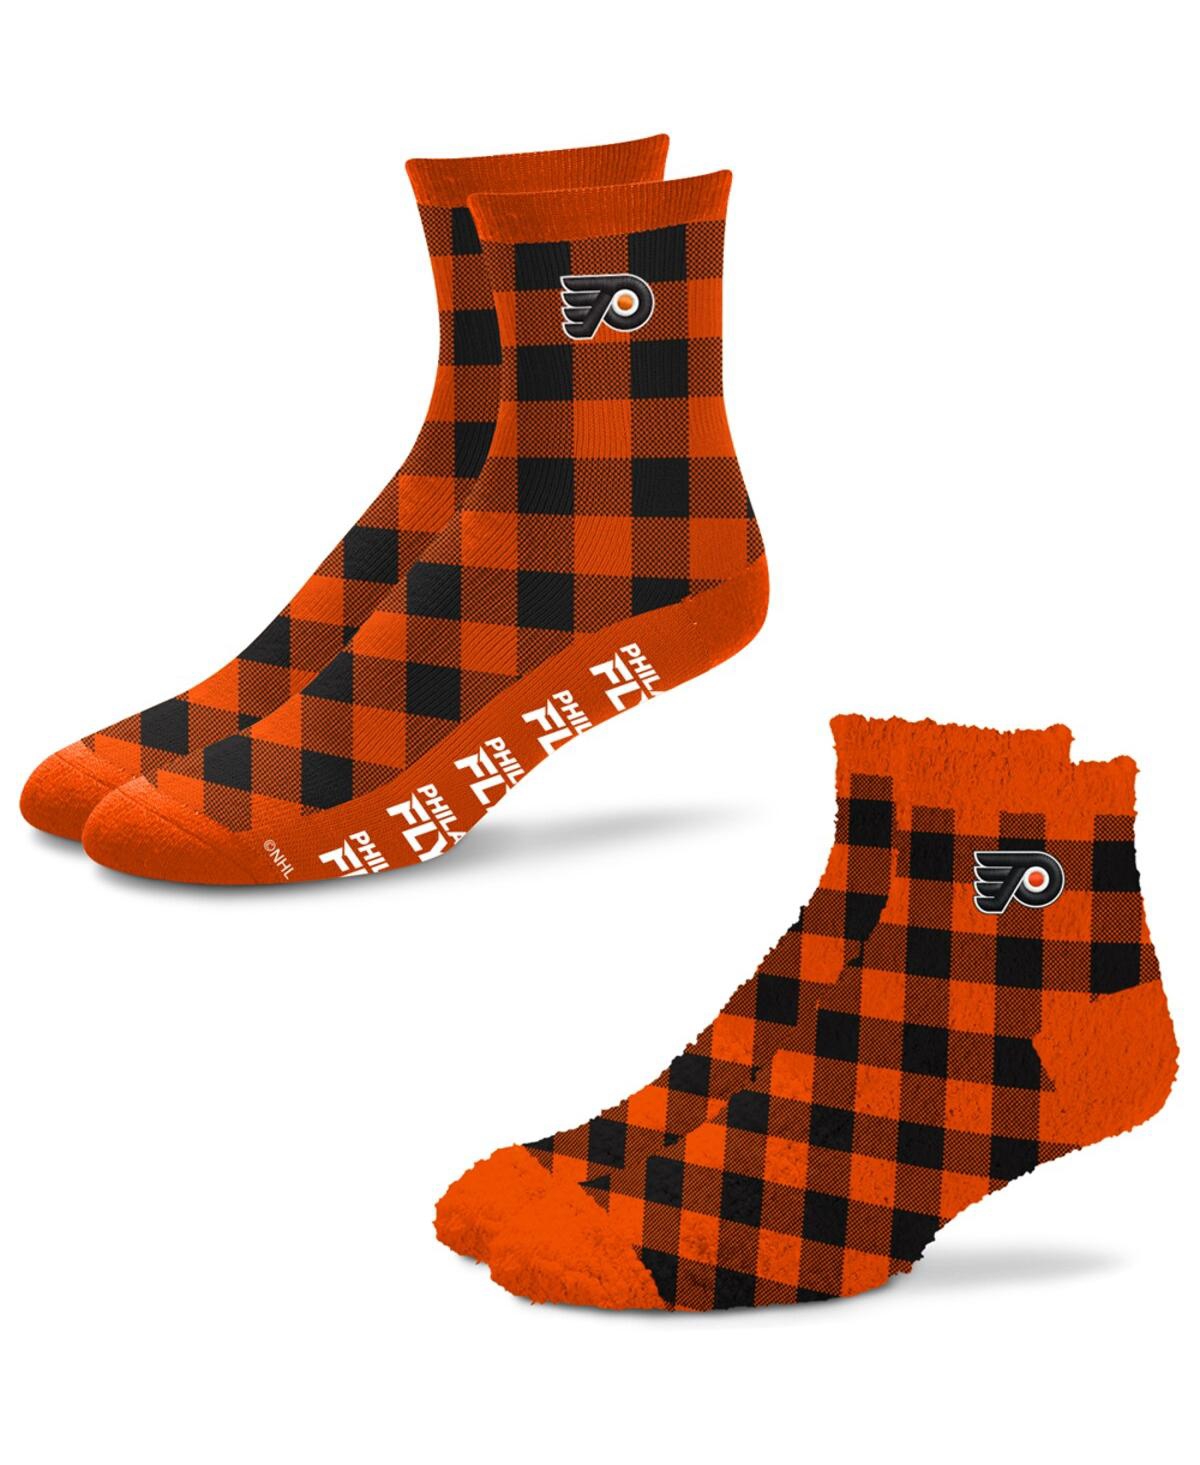 Men's and Women's For Bare Feet Philadelphia Flyers 2-Pack His & Hers Cozy Ankle Socks - Multi